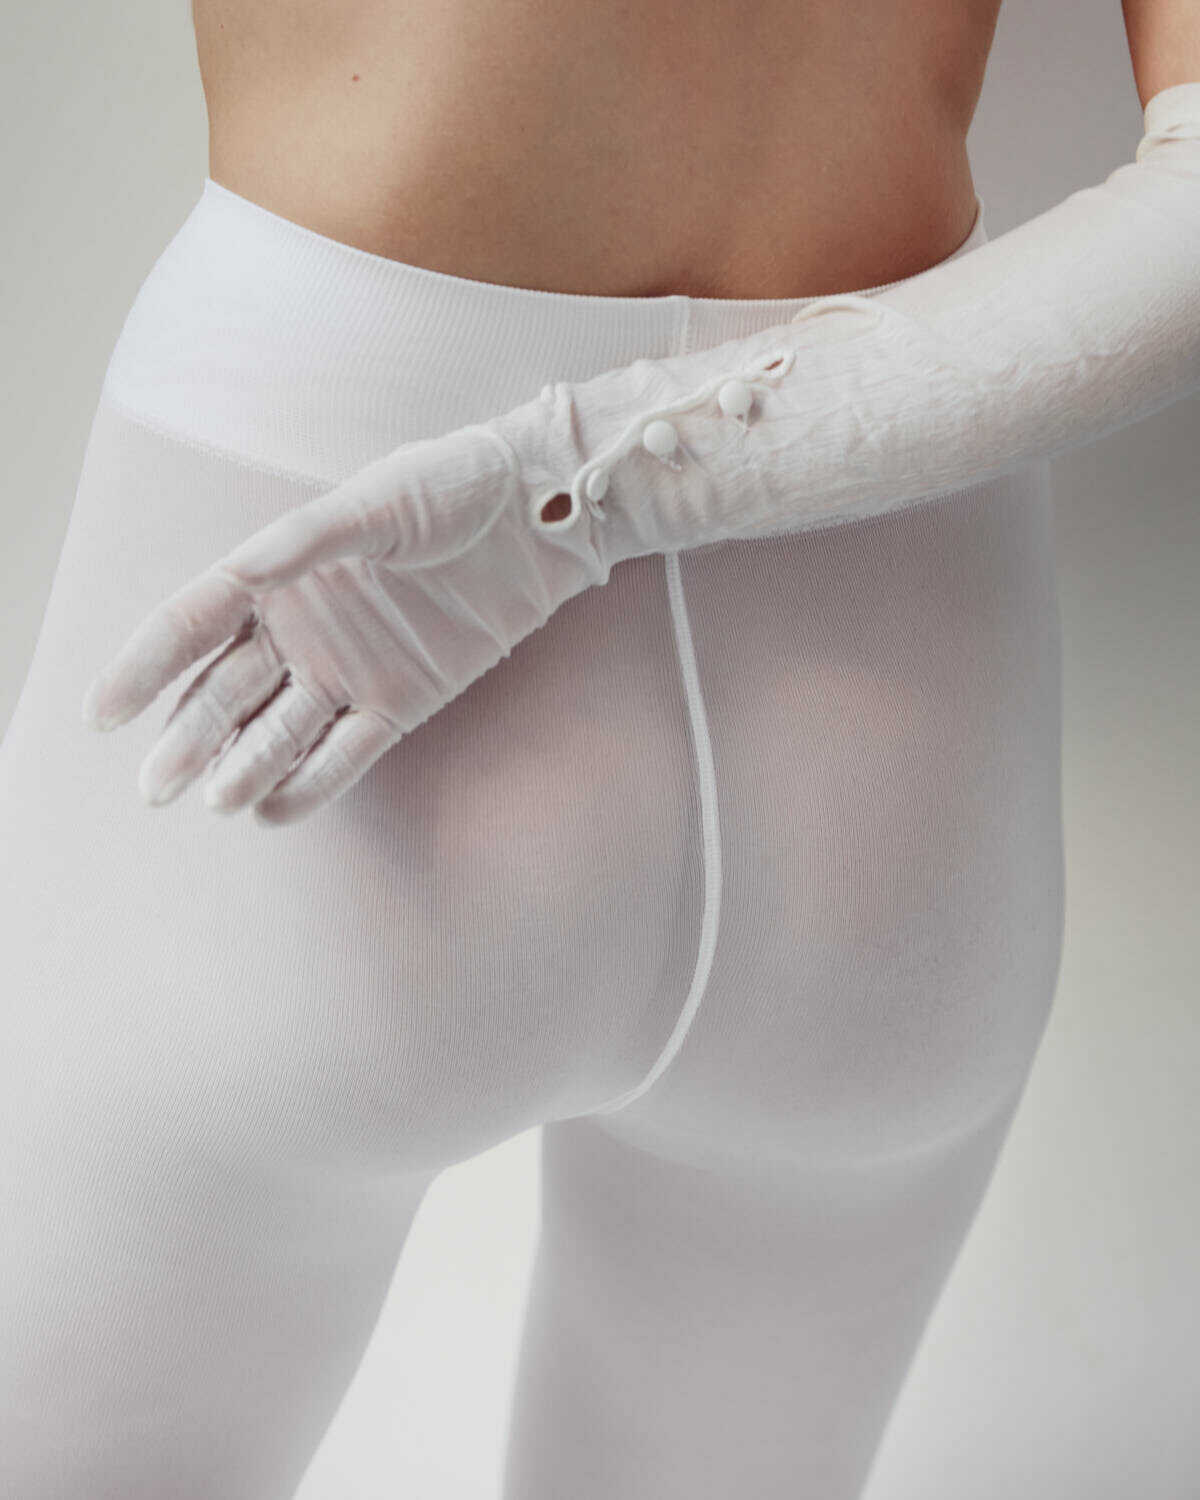 Το μοντέλο Dana Breeman σε γυμνές φωτογραφίες